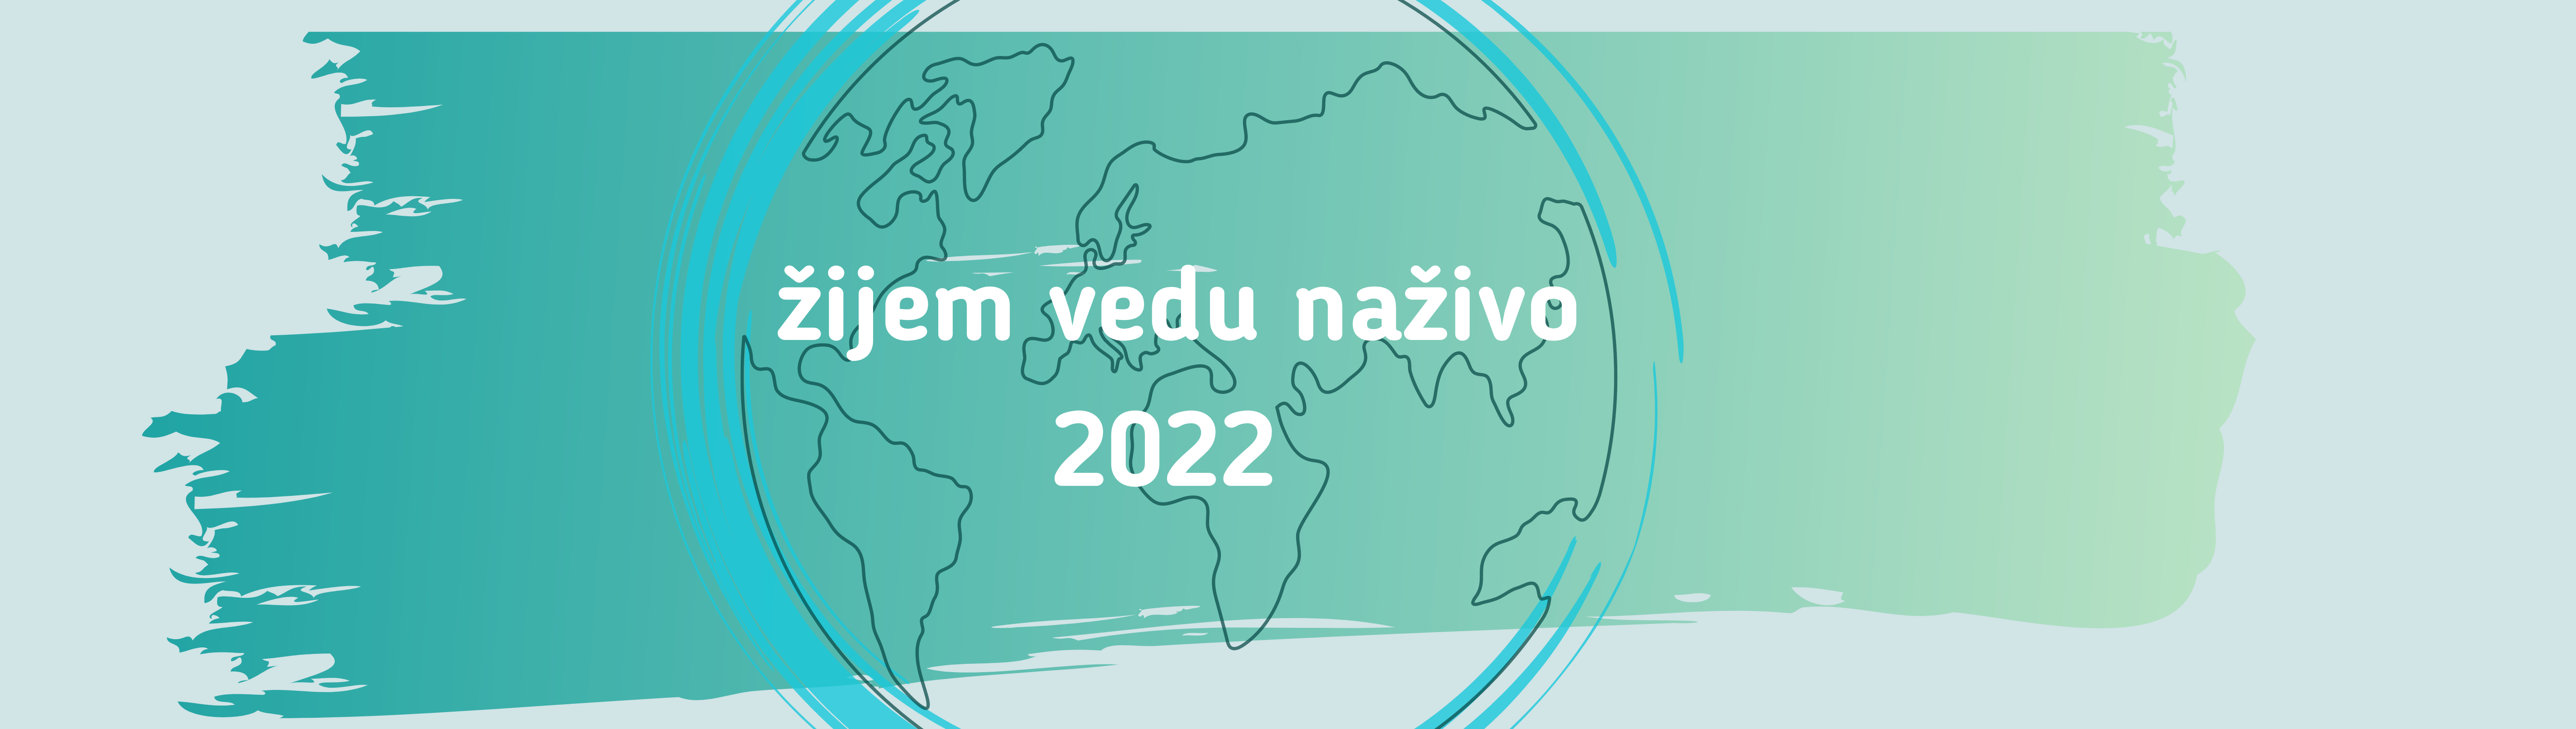 ŽVN 2022